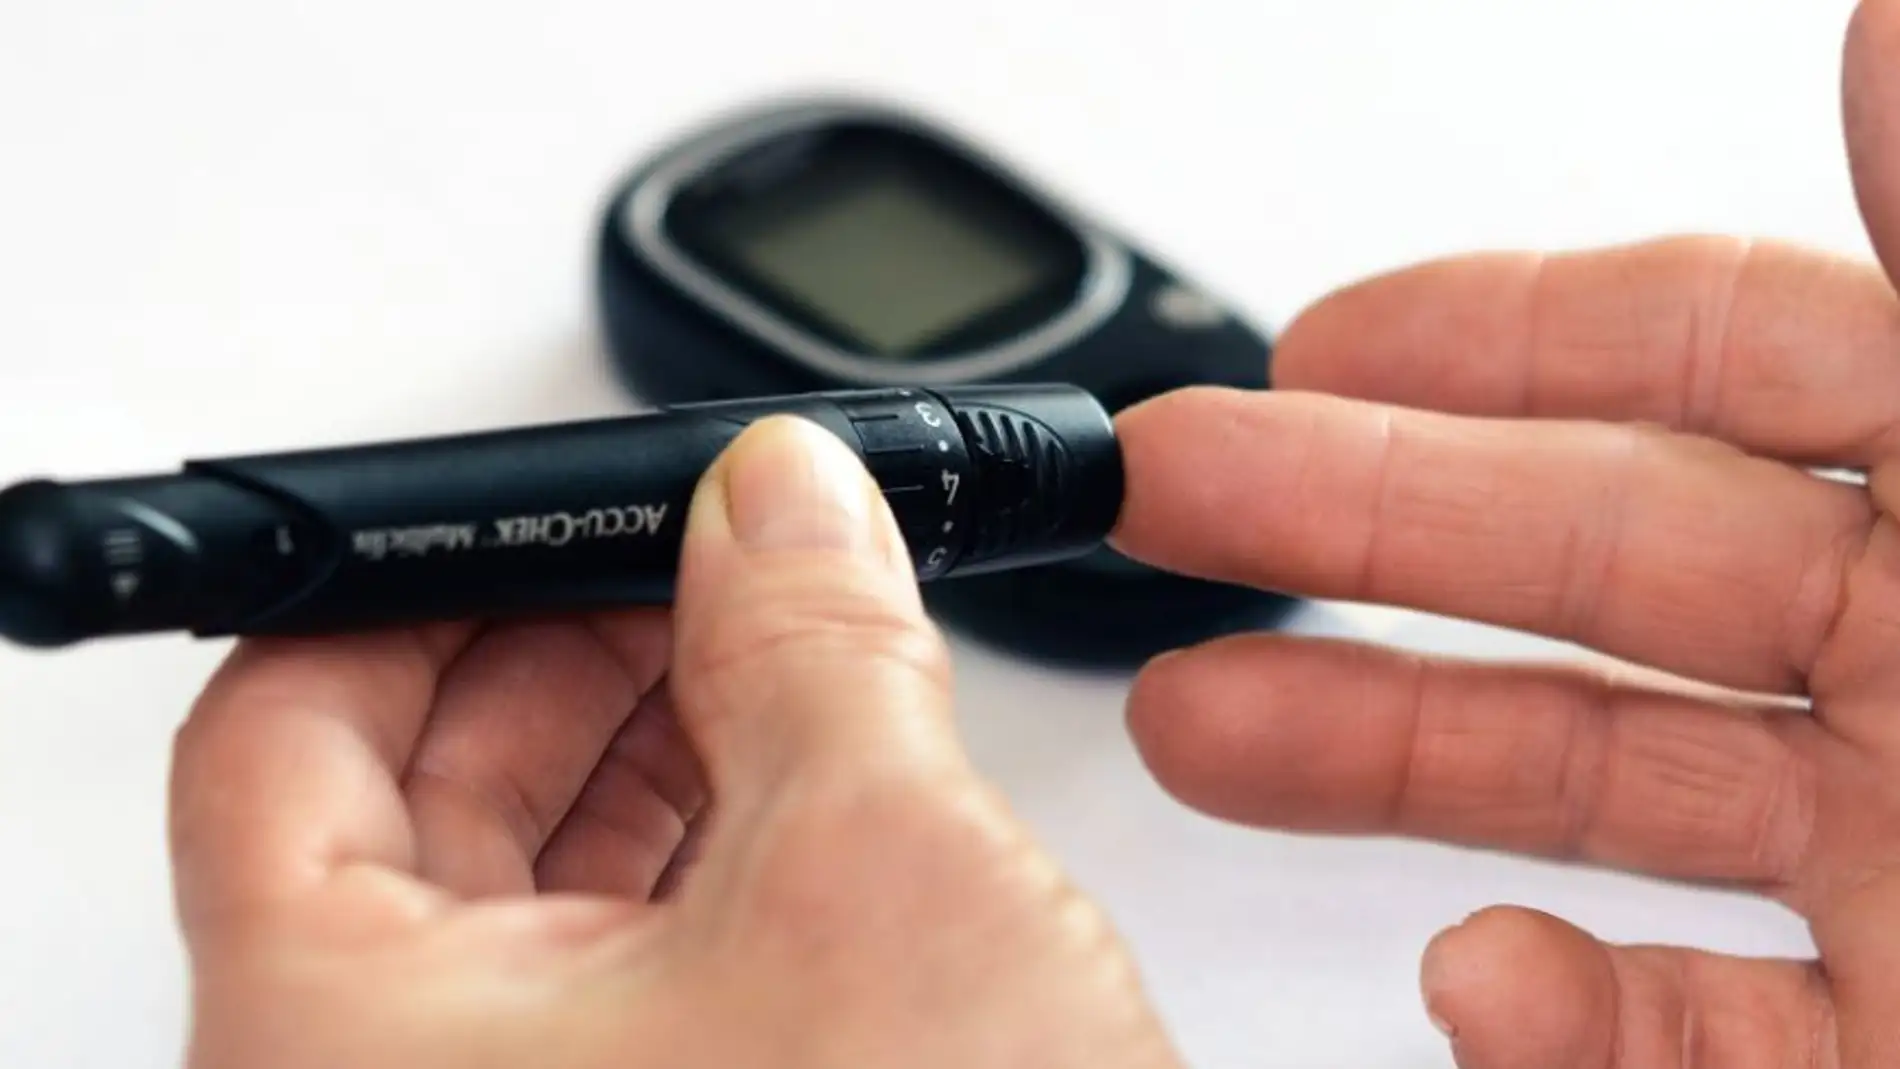 3 de cada 4 pacientes hace un mal uso del tratamiento para la diabetes